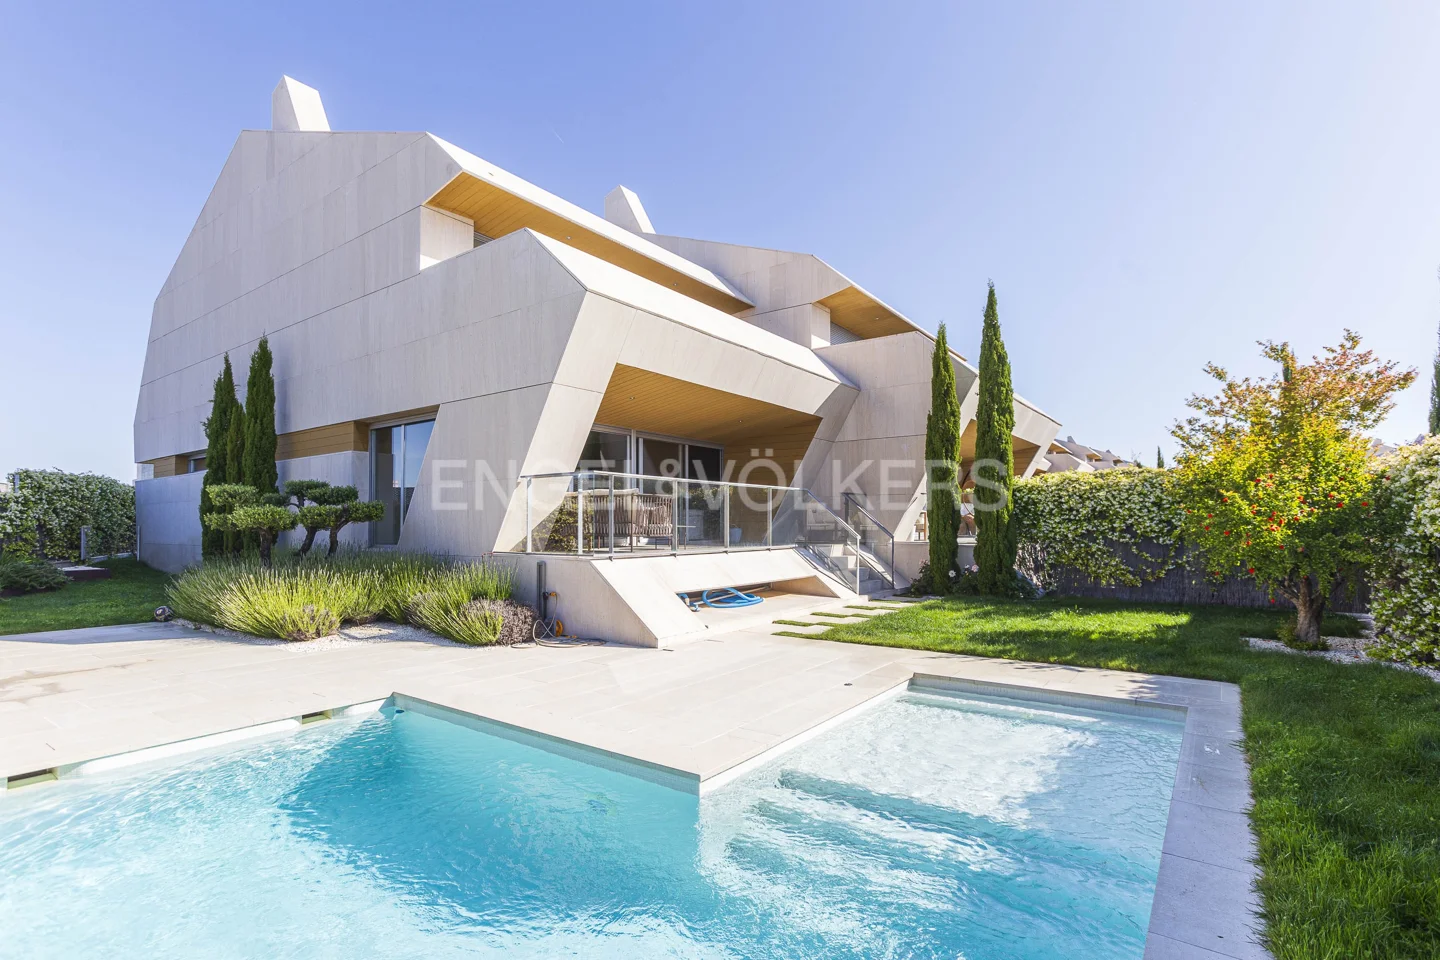 Fabulous corner villa with private pool in Boadilla del Monte